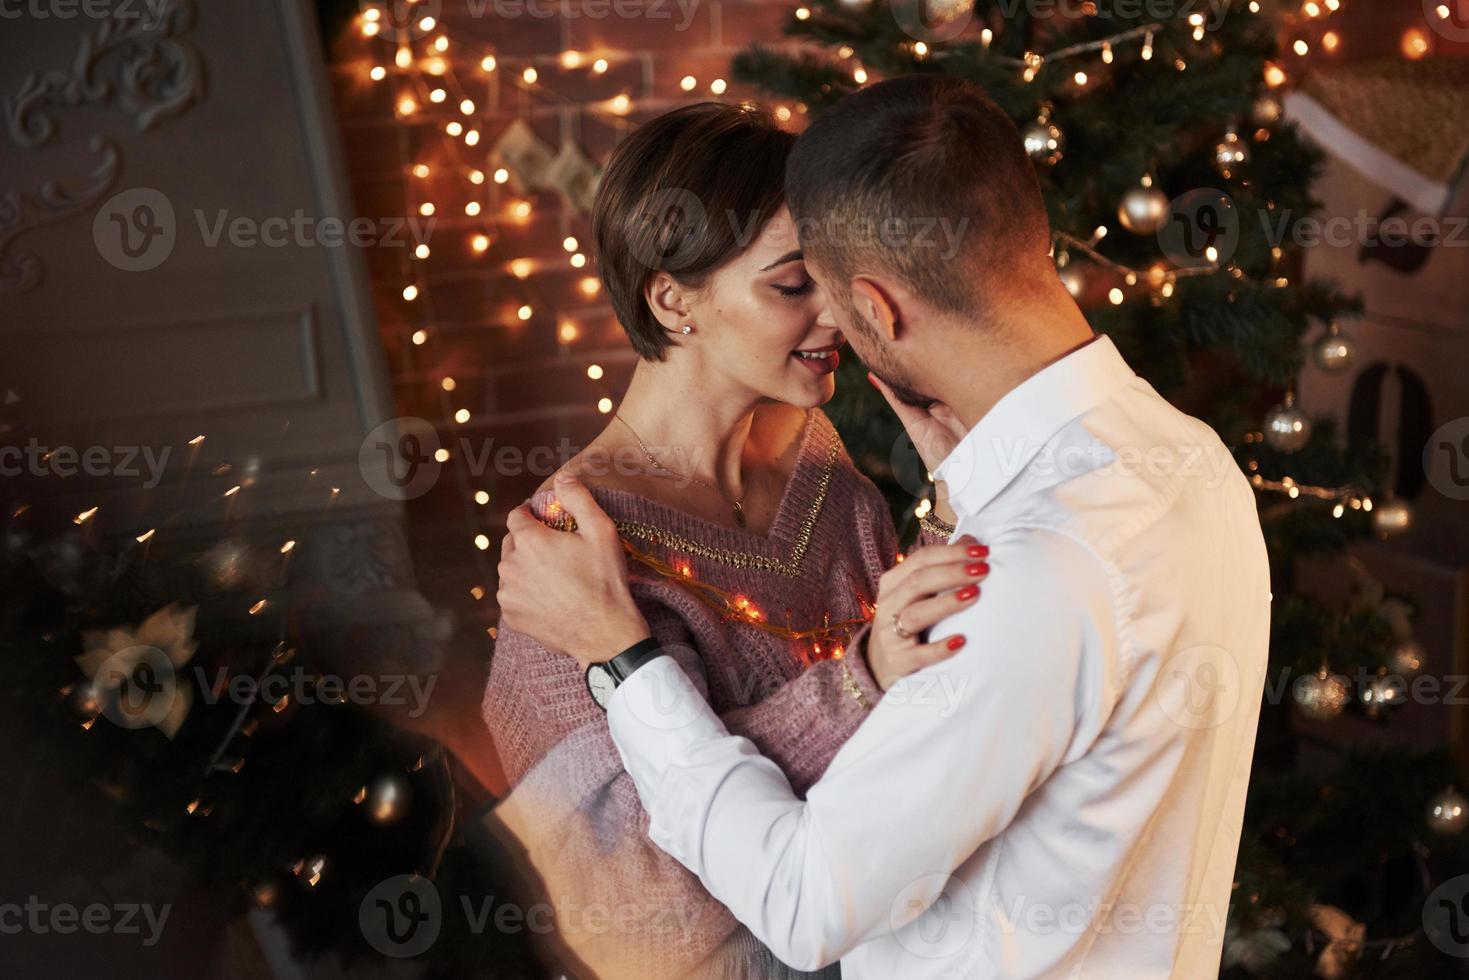 reflektion av julgranen. närhet mellan killen och tjejen i lyxkläder som dansar och flirtar foto